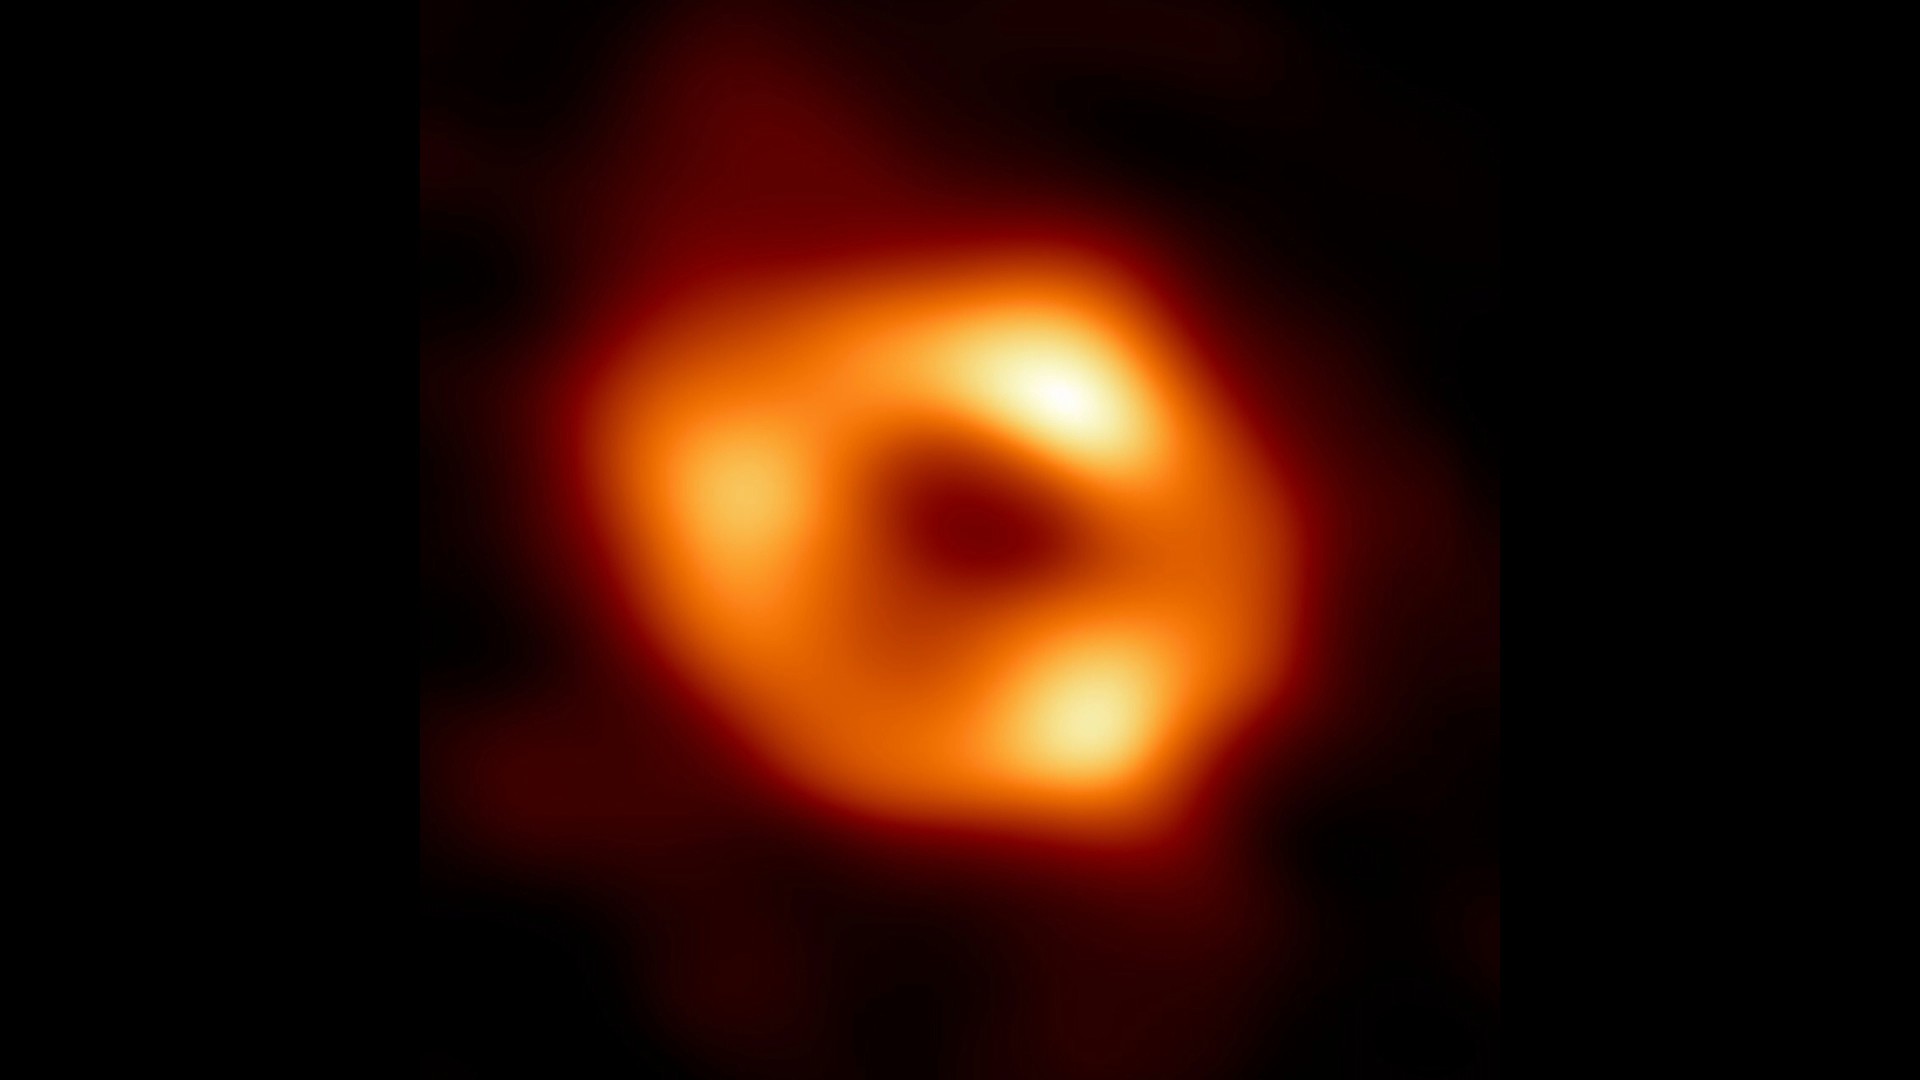 Un equipo internacional de astrónomos anunció el jueves que logró capturar la imagen del agujero negro supermasivo ubicado en el centro de la Via Láctea, tres años después de haber obtenido la de otro similar en la galaxia M87.